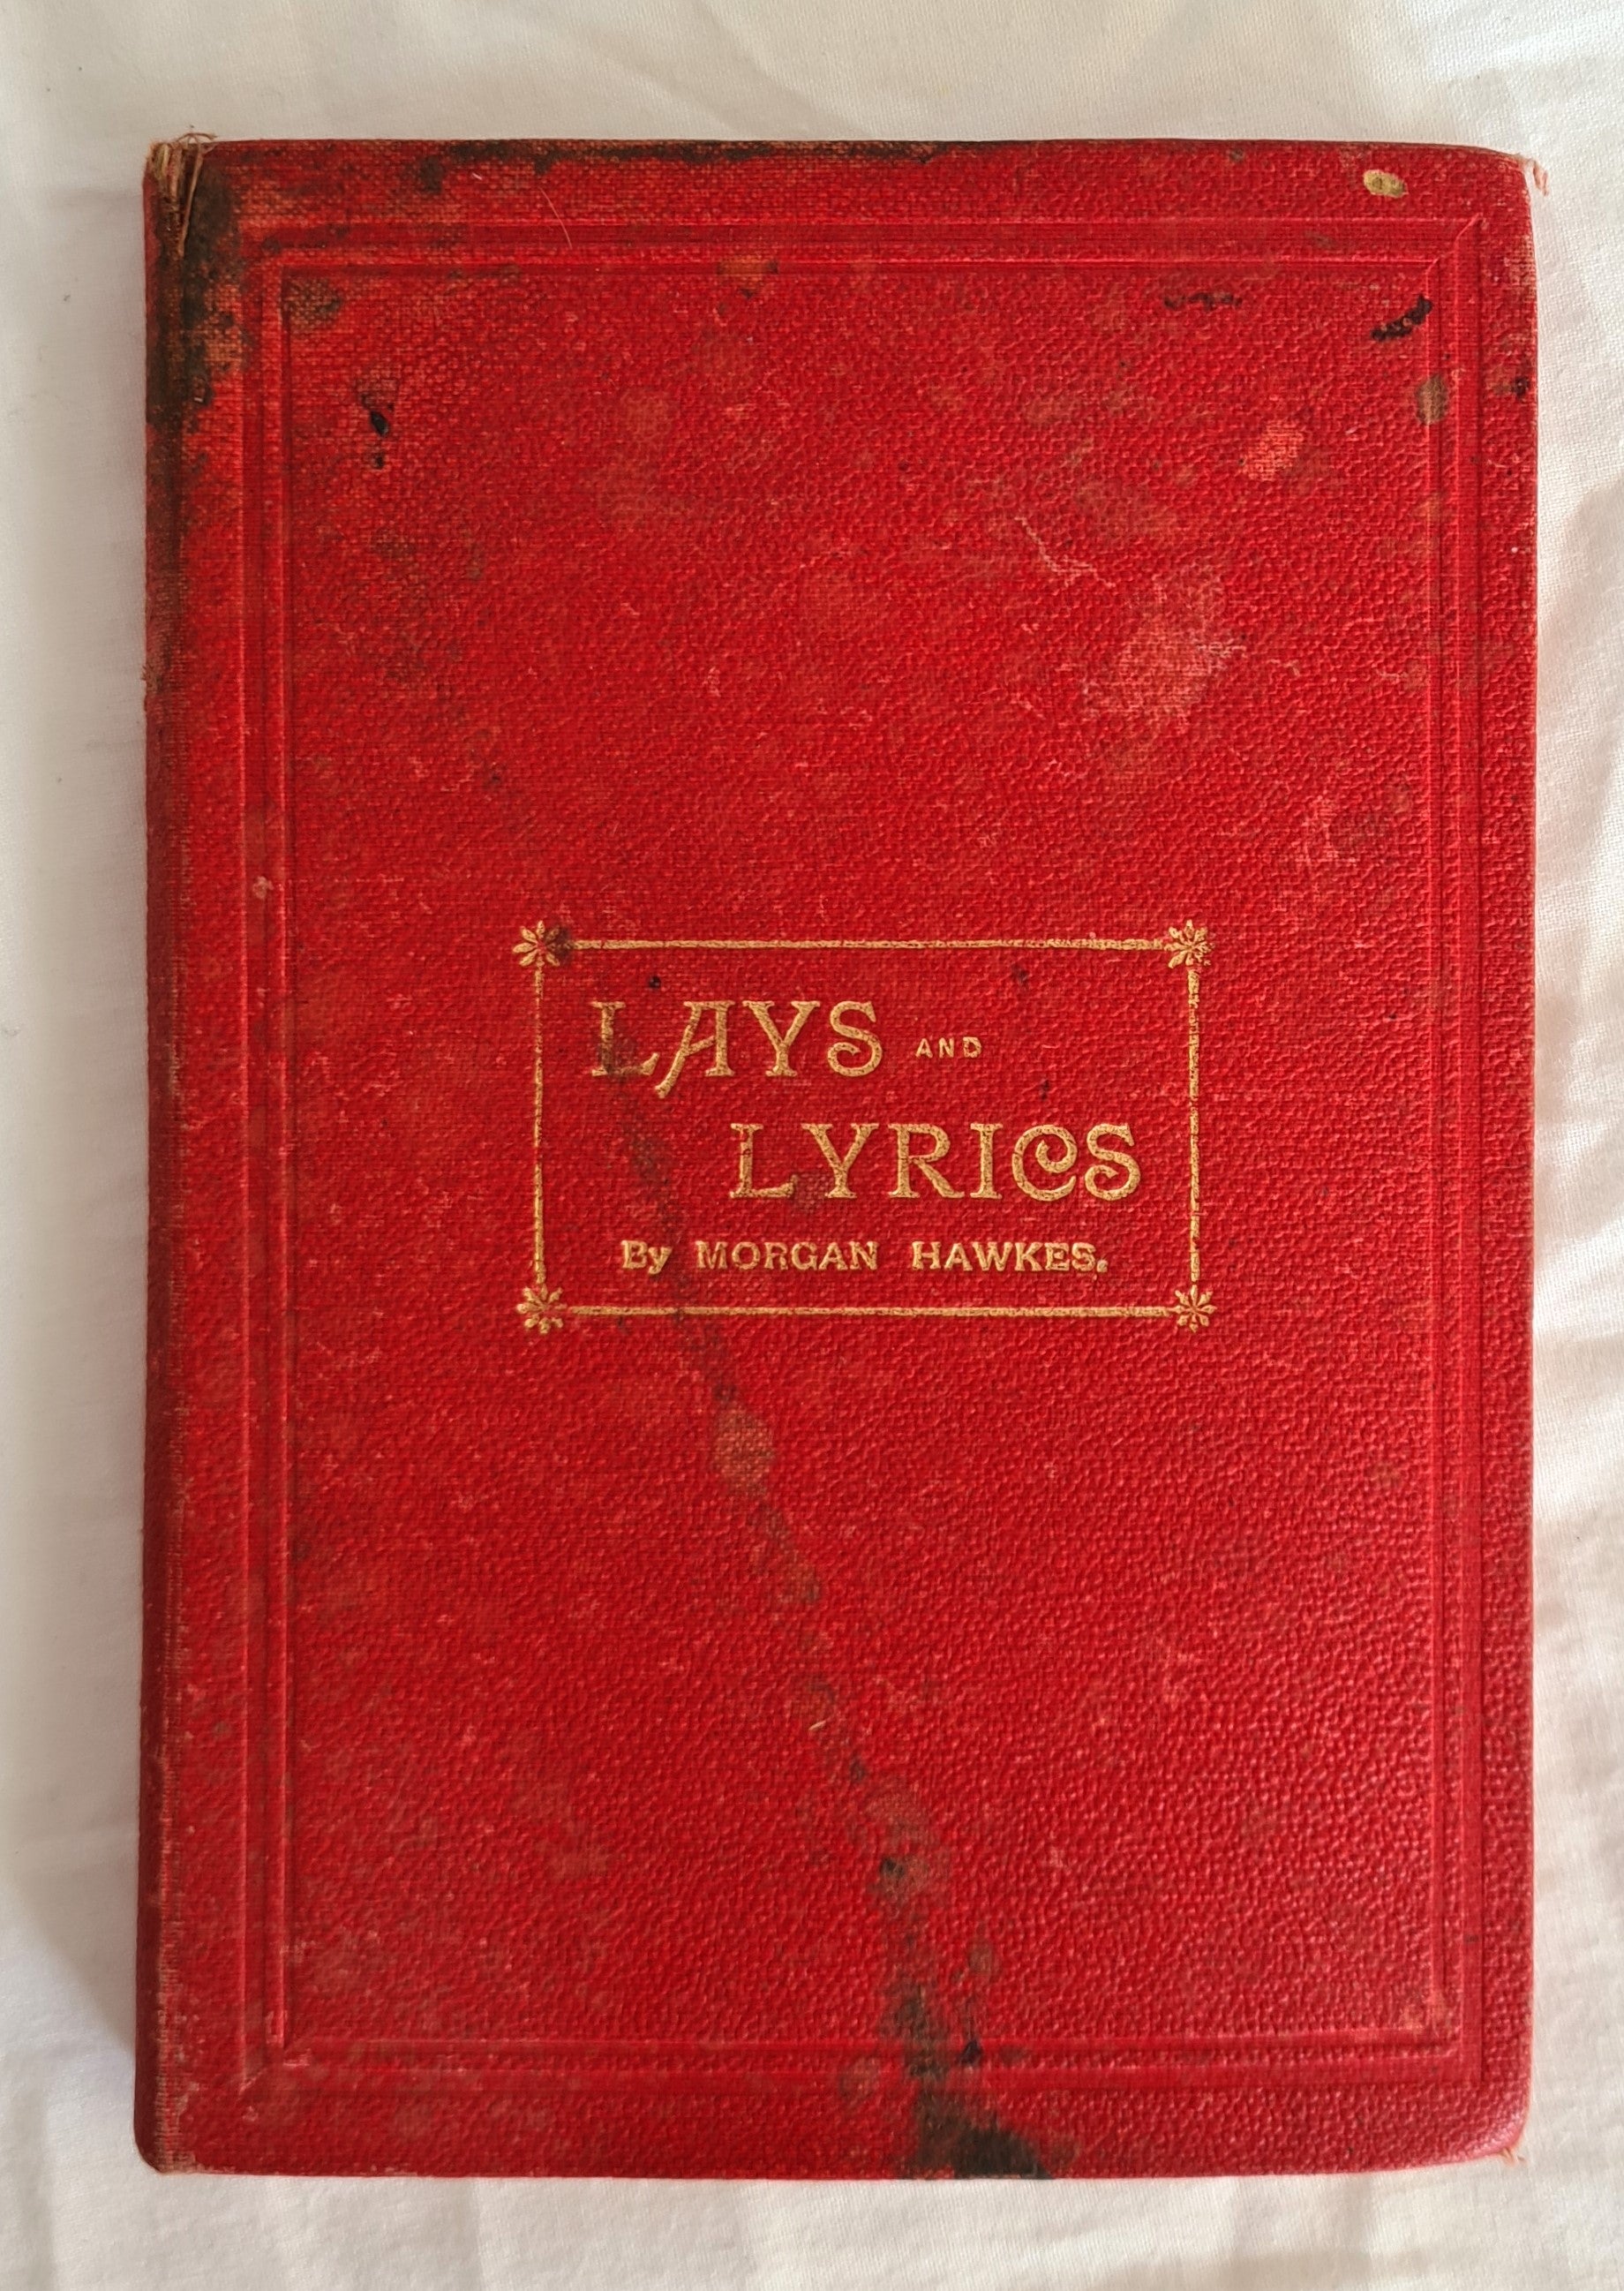 Lays and Lyrics by Morgan Hawkes